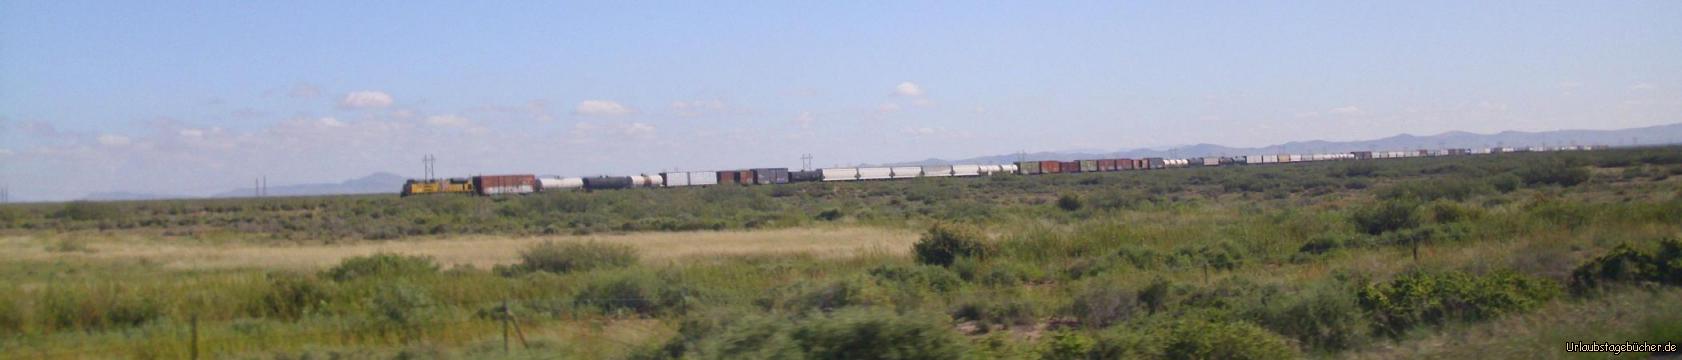 Union Pacific Railroad: auf dem Weg von New Mexico nach Arizona fährt neben uns ein schier endloser Zug der Union Pacific Railroad